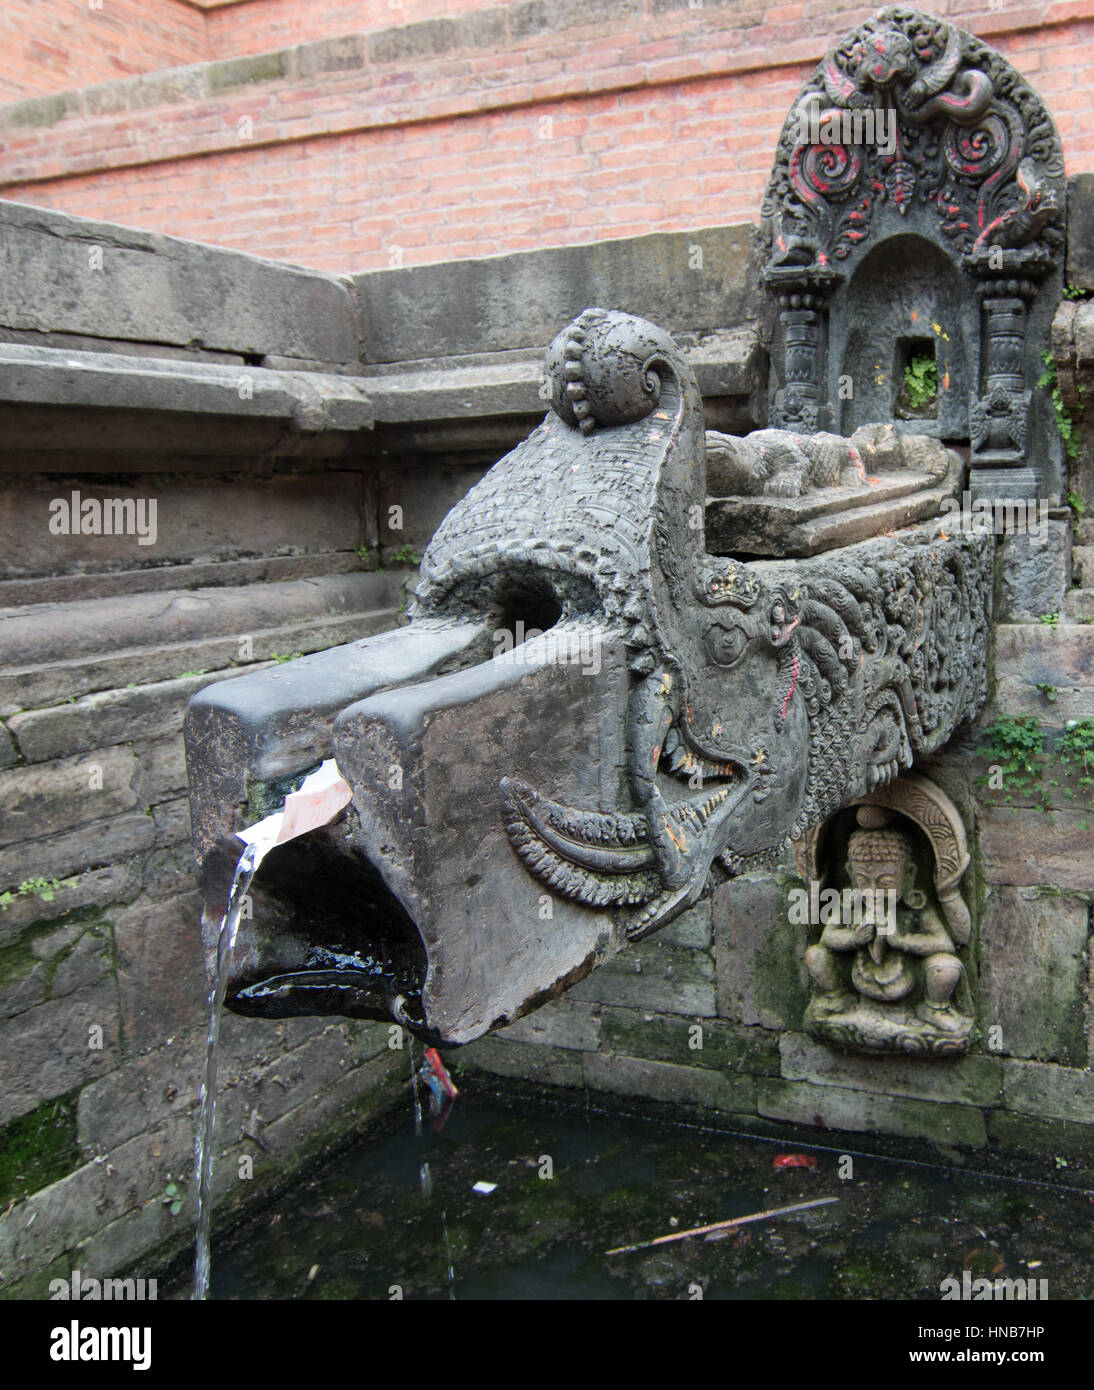 Aufwendig gearbeitete Bronze Wasser Auslauf mit religiösen und tierische Motive dieser Kanäle aus einer unterirdischen Quelle auf einem öffentlichen Platz, Kathmandu, Nepal Stockfoto